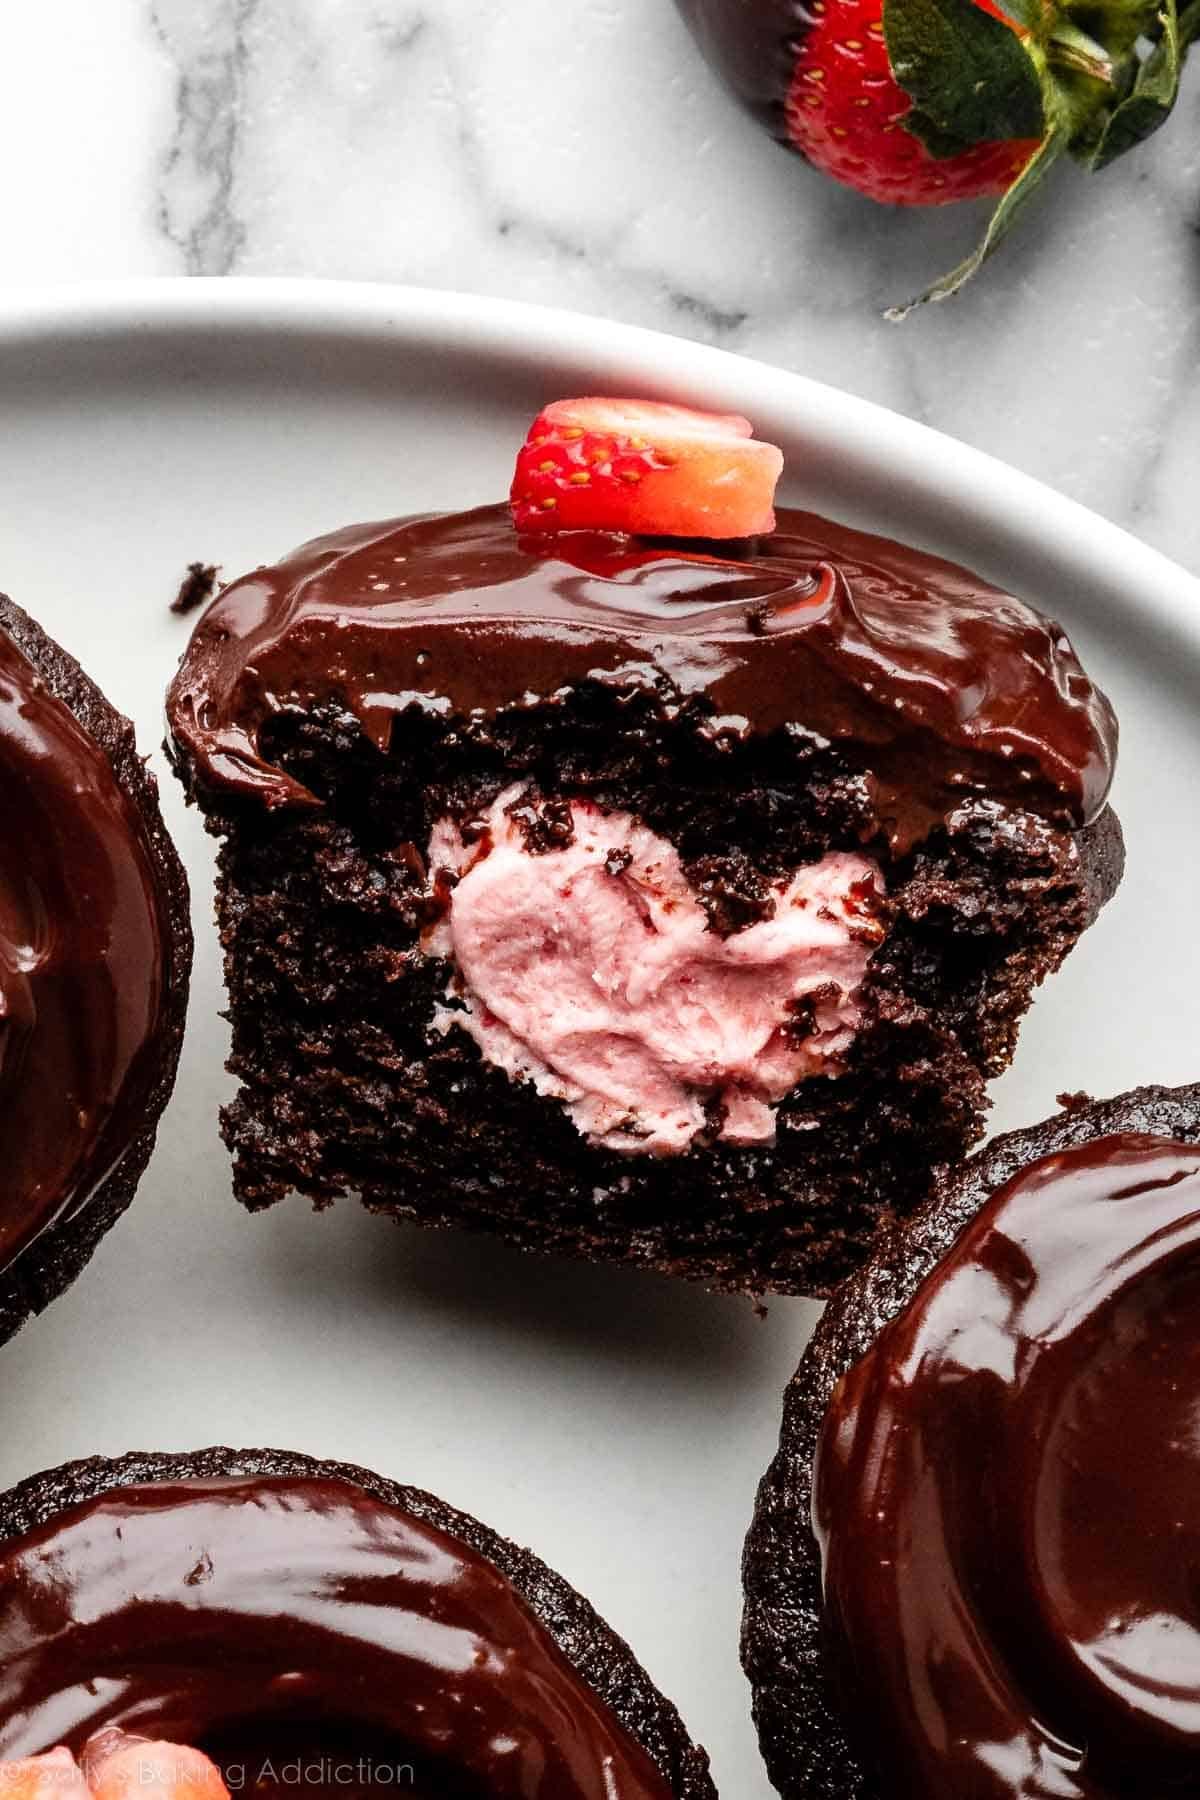 närbild av choklad täckt jordgubbscupcake fylld med jordgubbssmörkräm och skivad öppen.